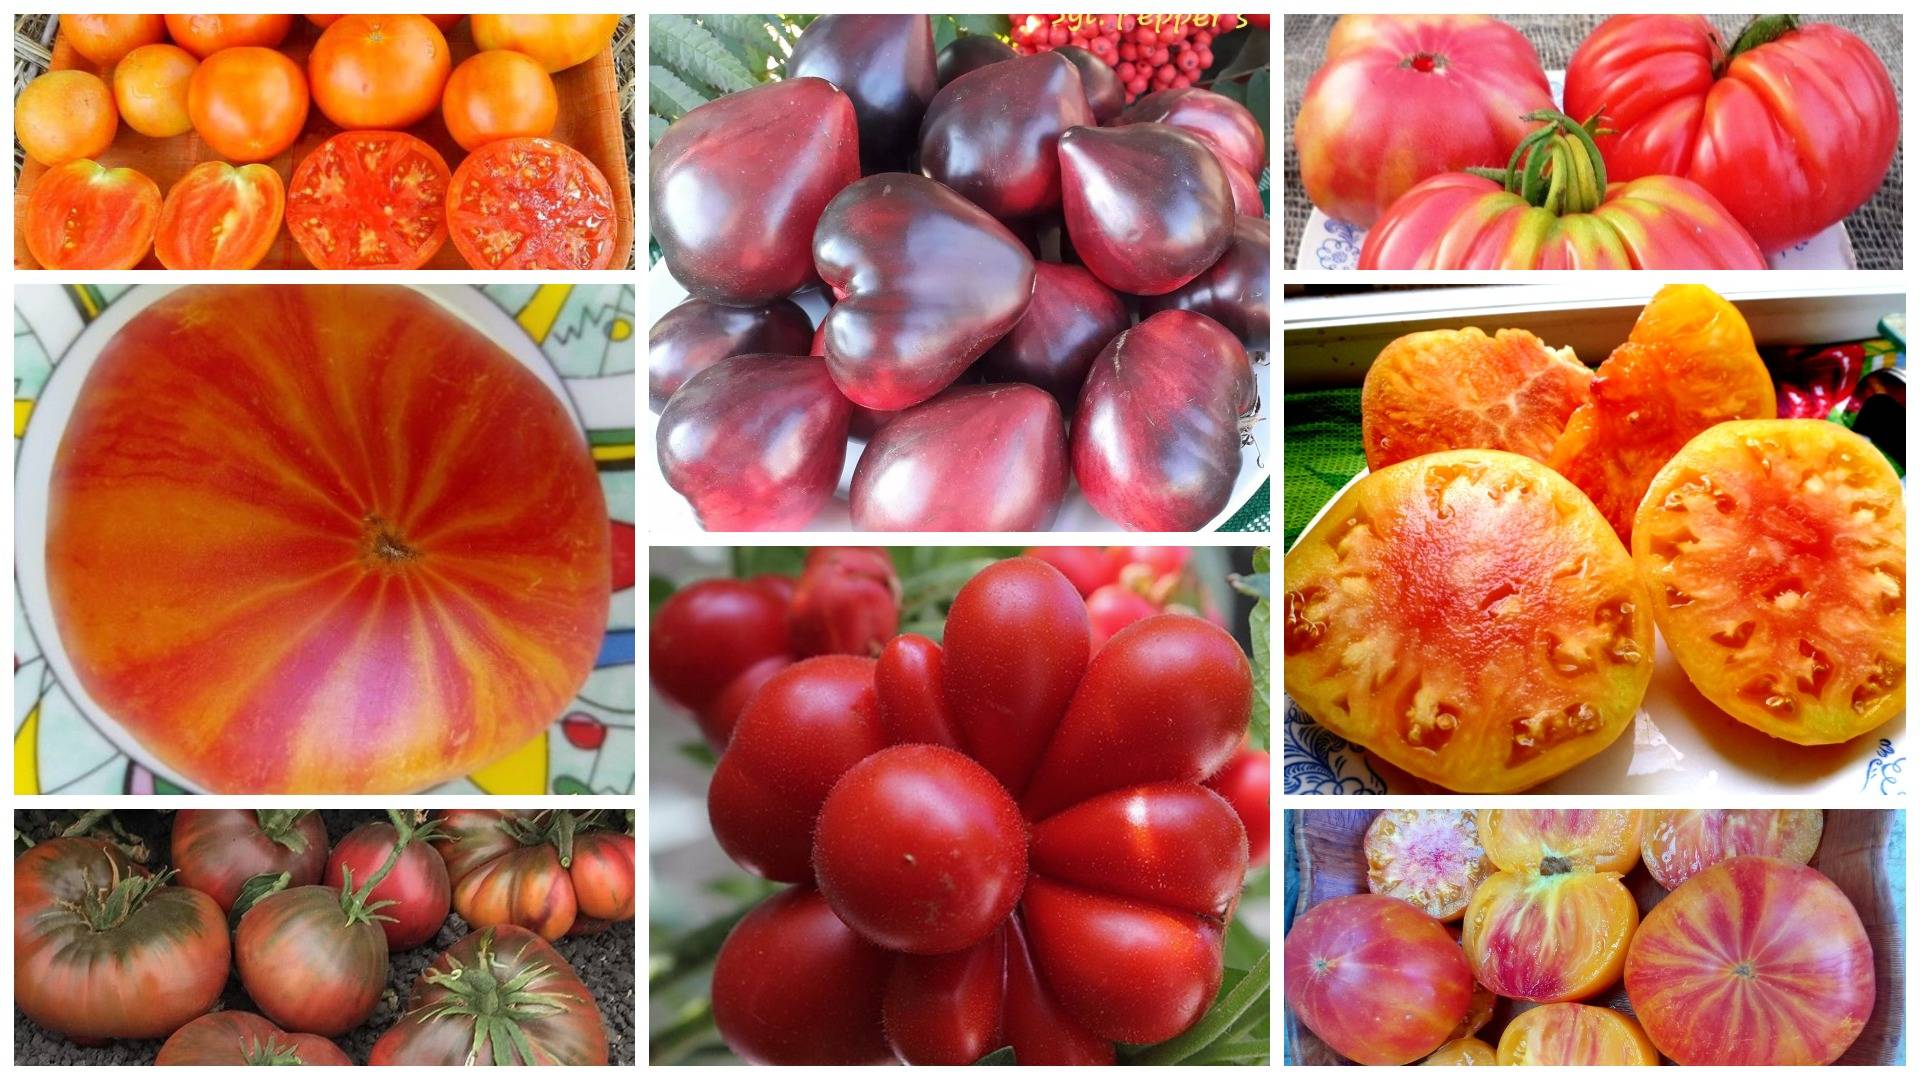 Описание редких коллекционных сортов томатов от валентины редько, новинки 2021 года